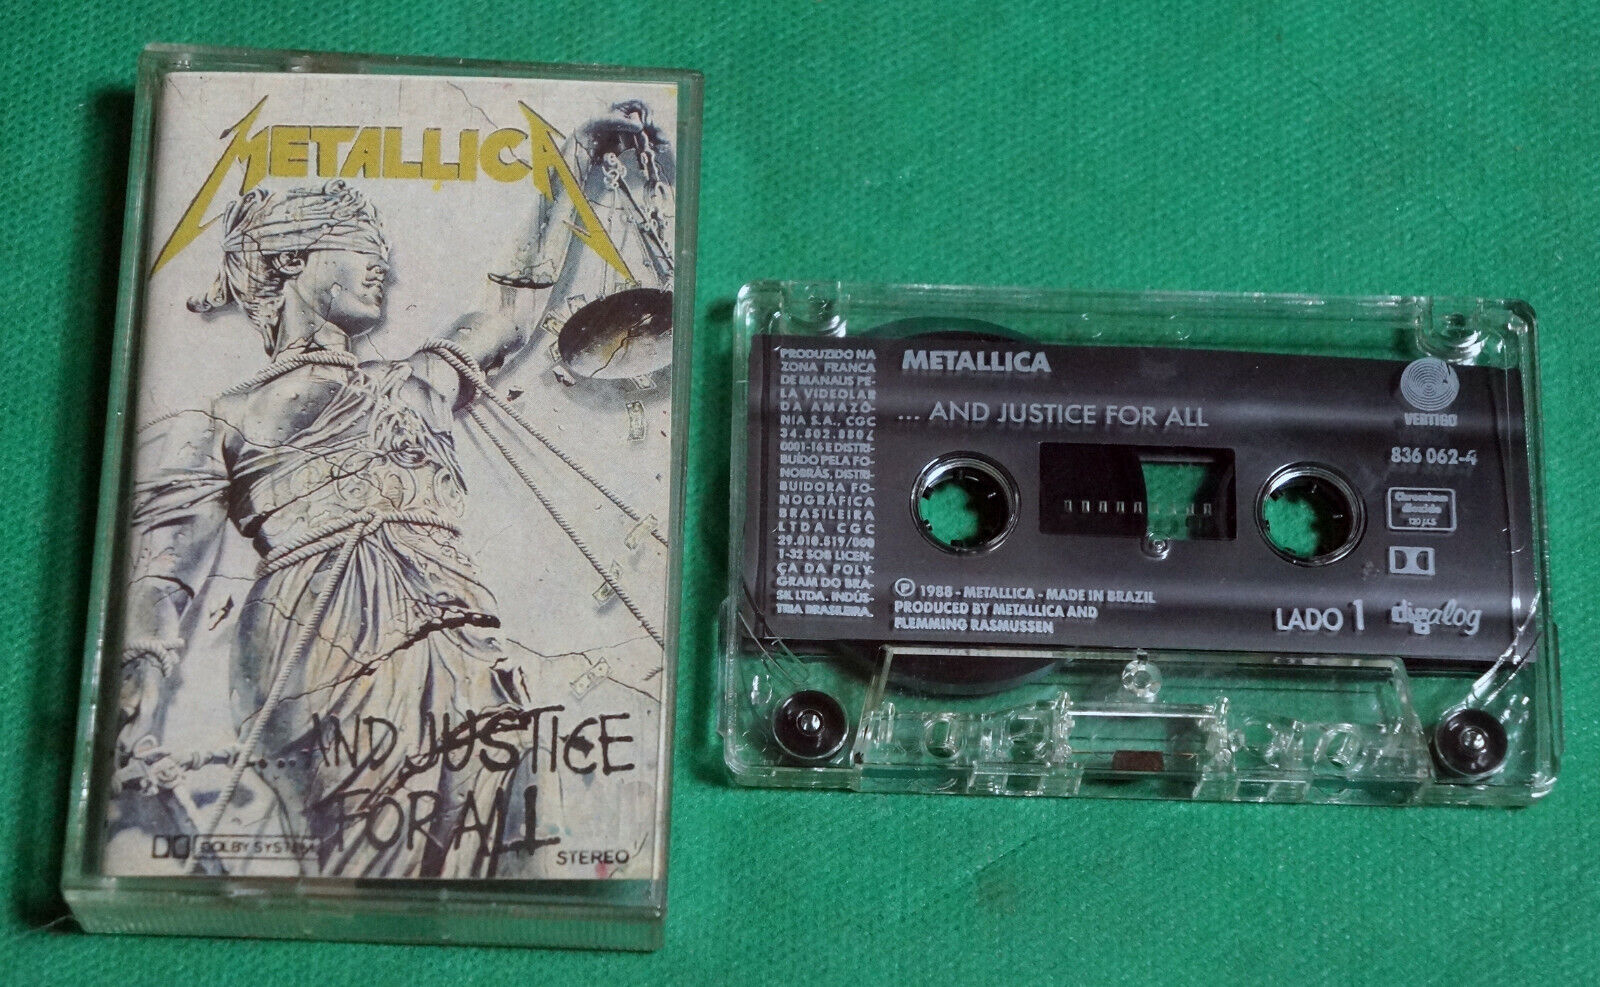 Metallica - And justice for all BRAZIL RARE CASSETTE 1988 Vertigo Chrome Extra